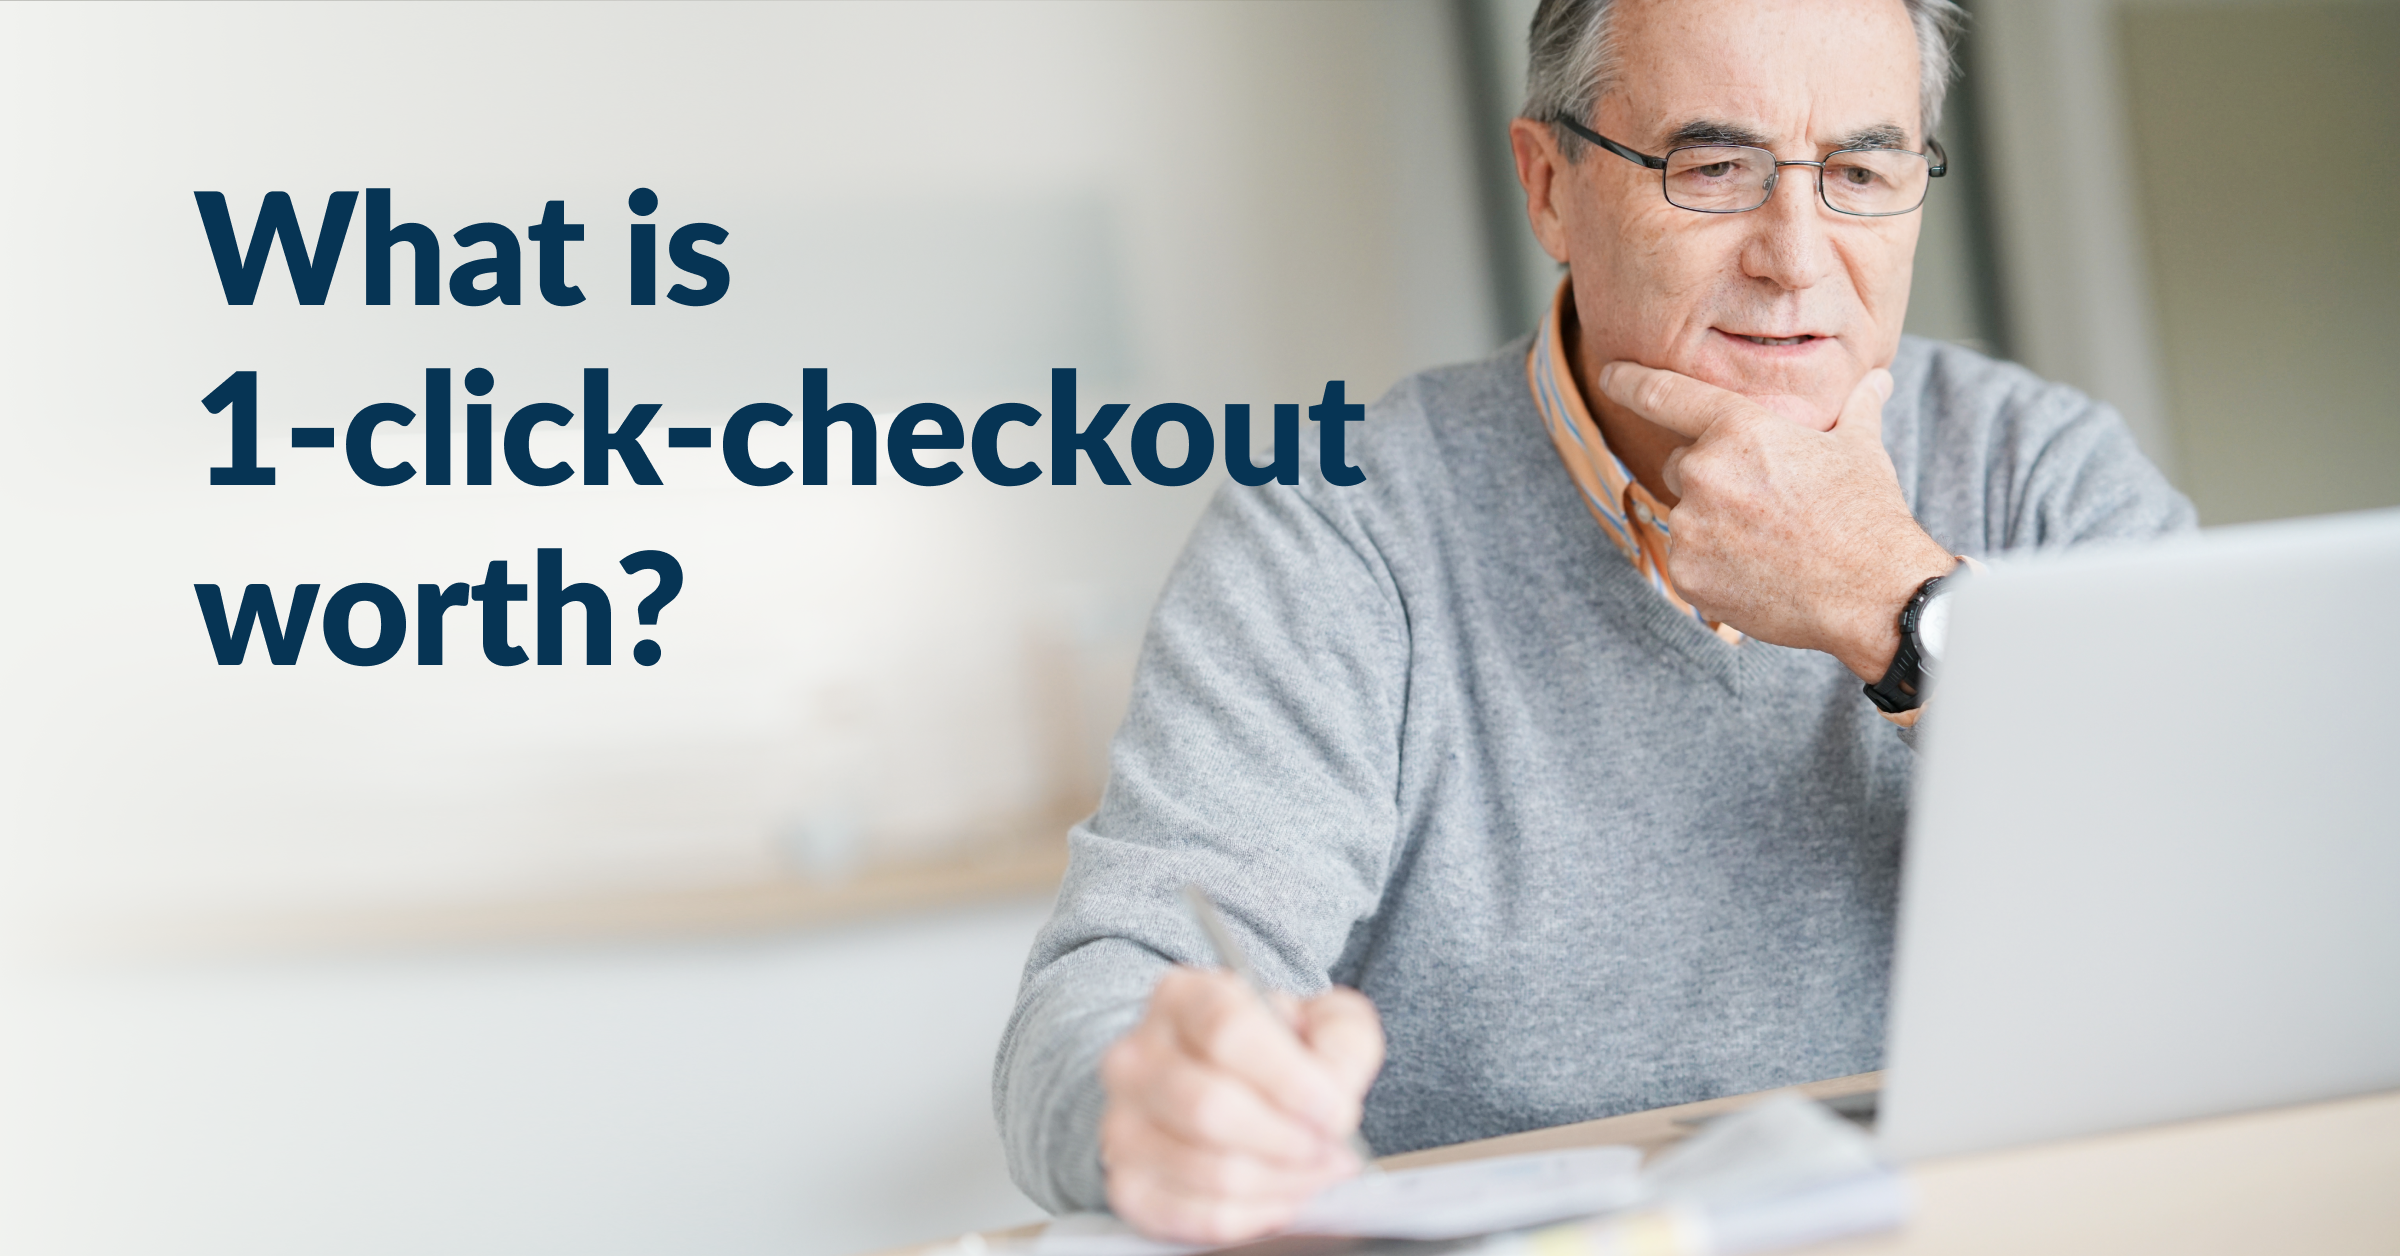 Vad krävs för 1-click checkout inom försäkring?